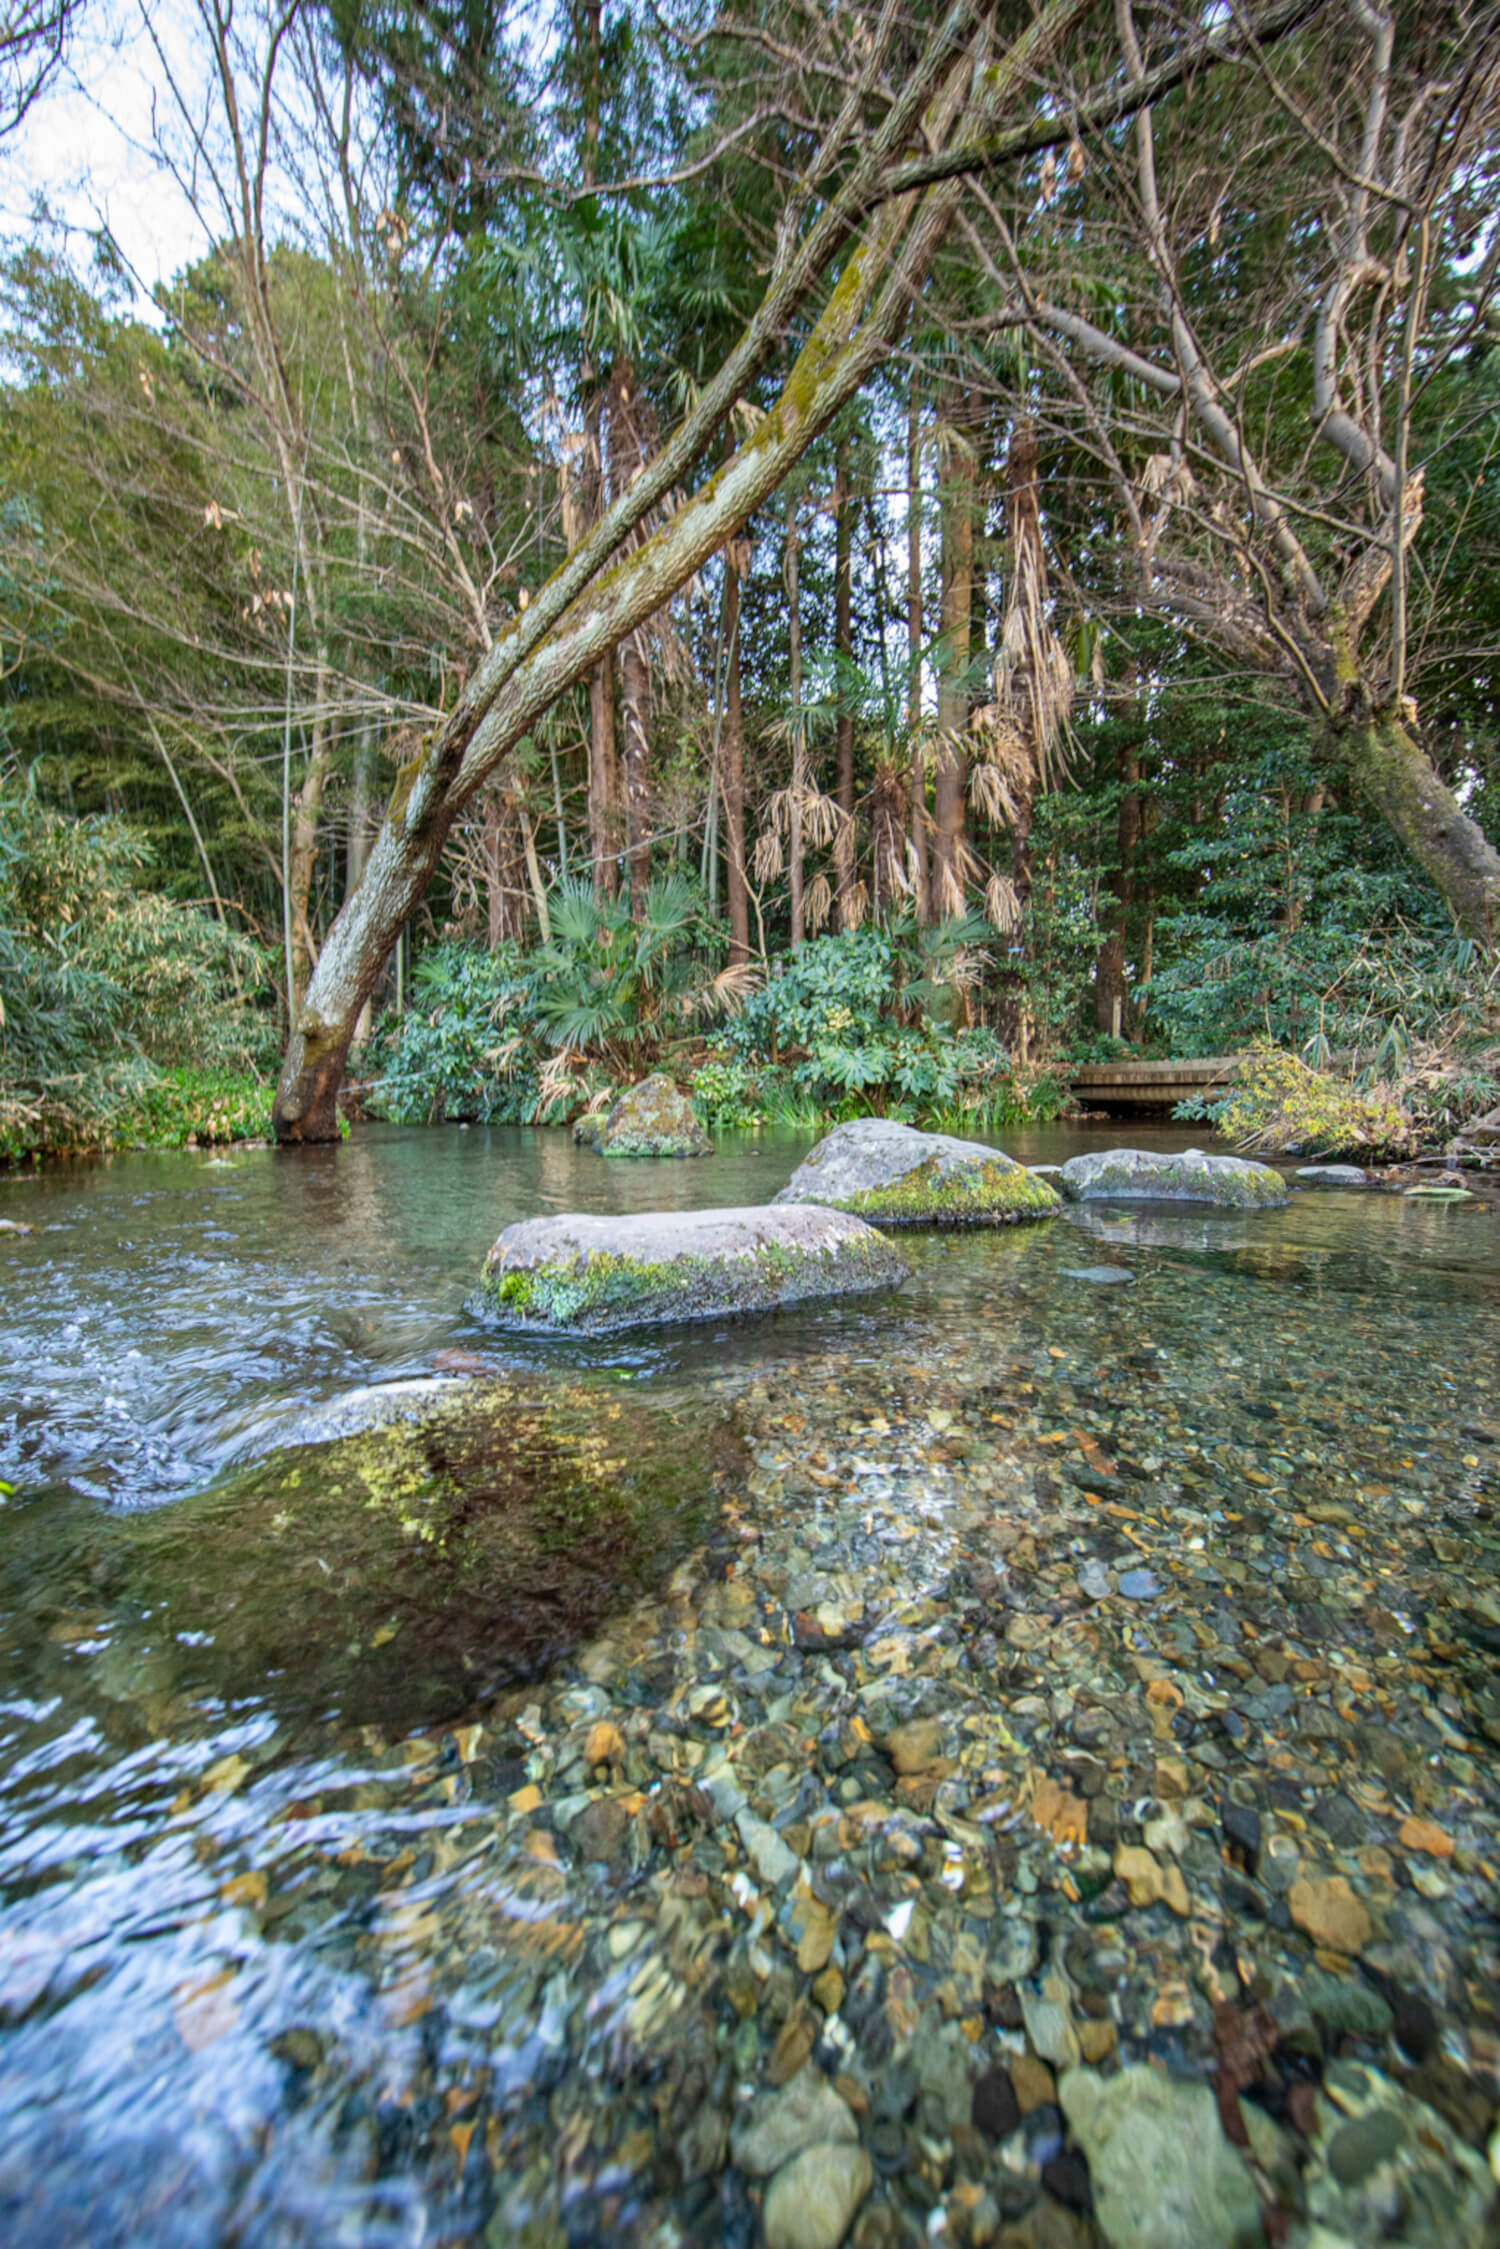 平成の名水百選に選ばれた「落合川と南沢湧水群」。写真は南沢緑地保全地域を流れる小川。